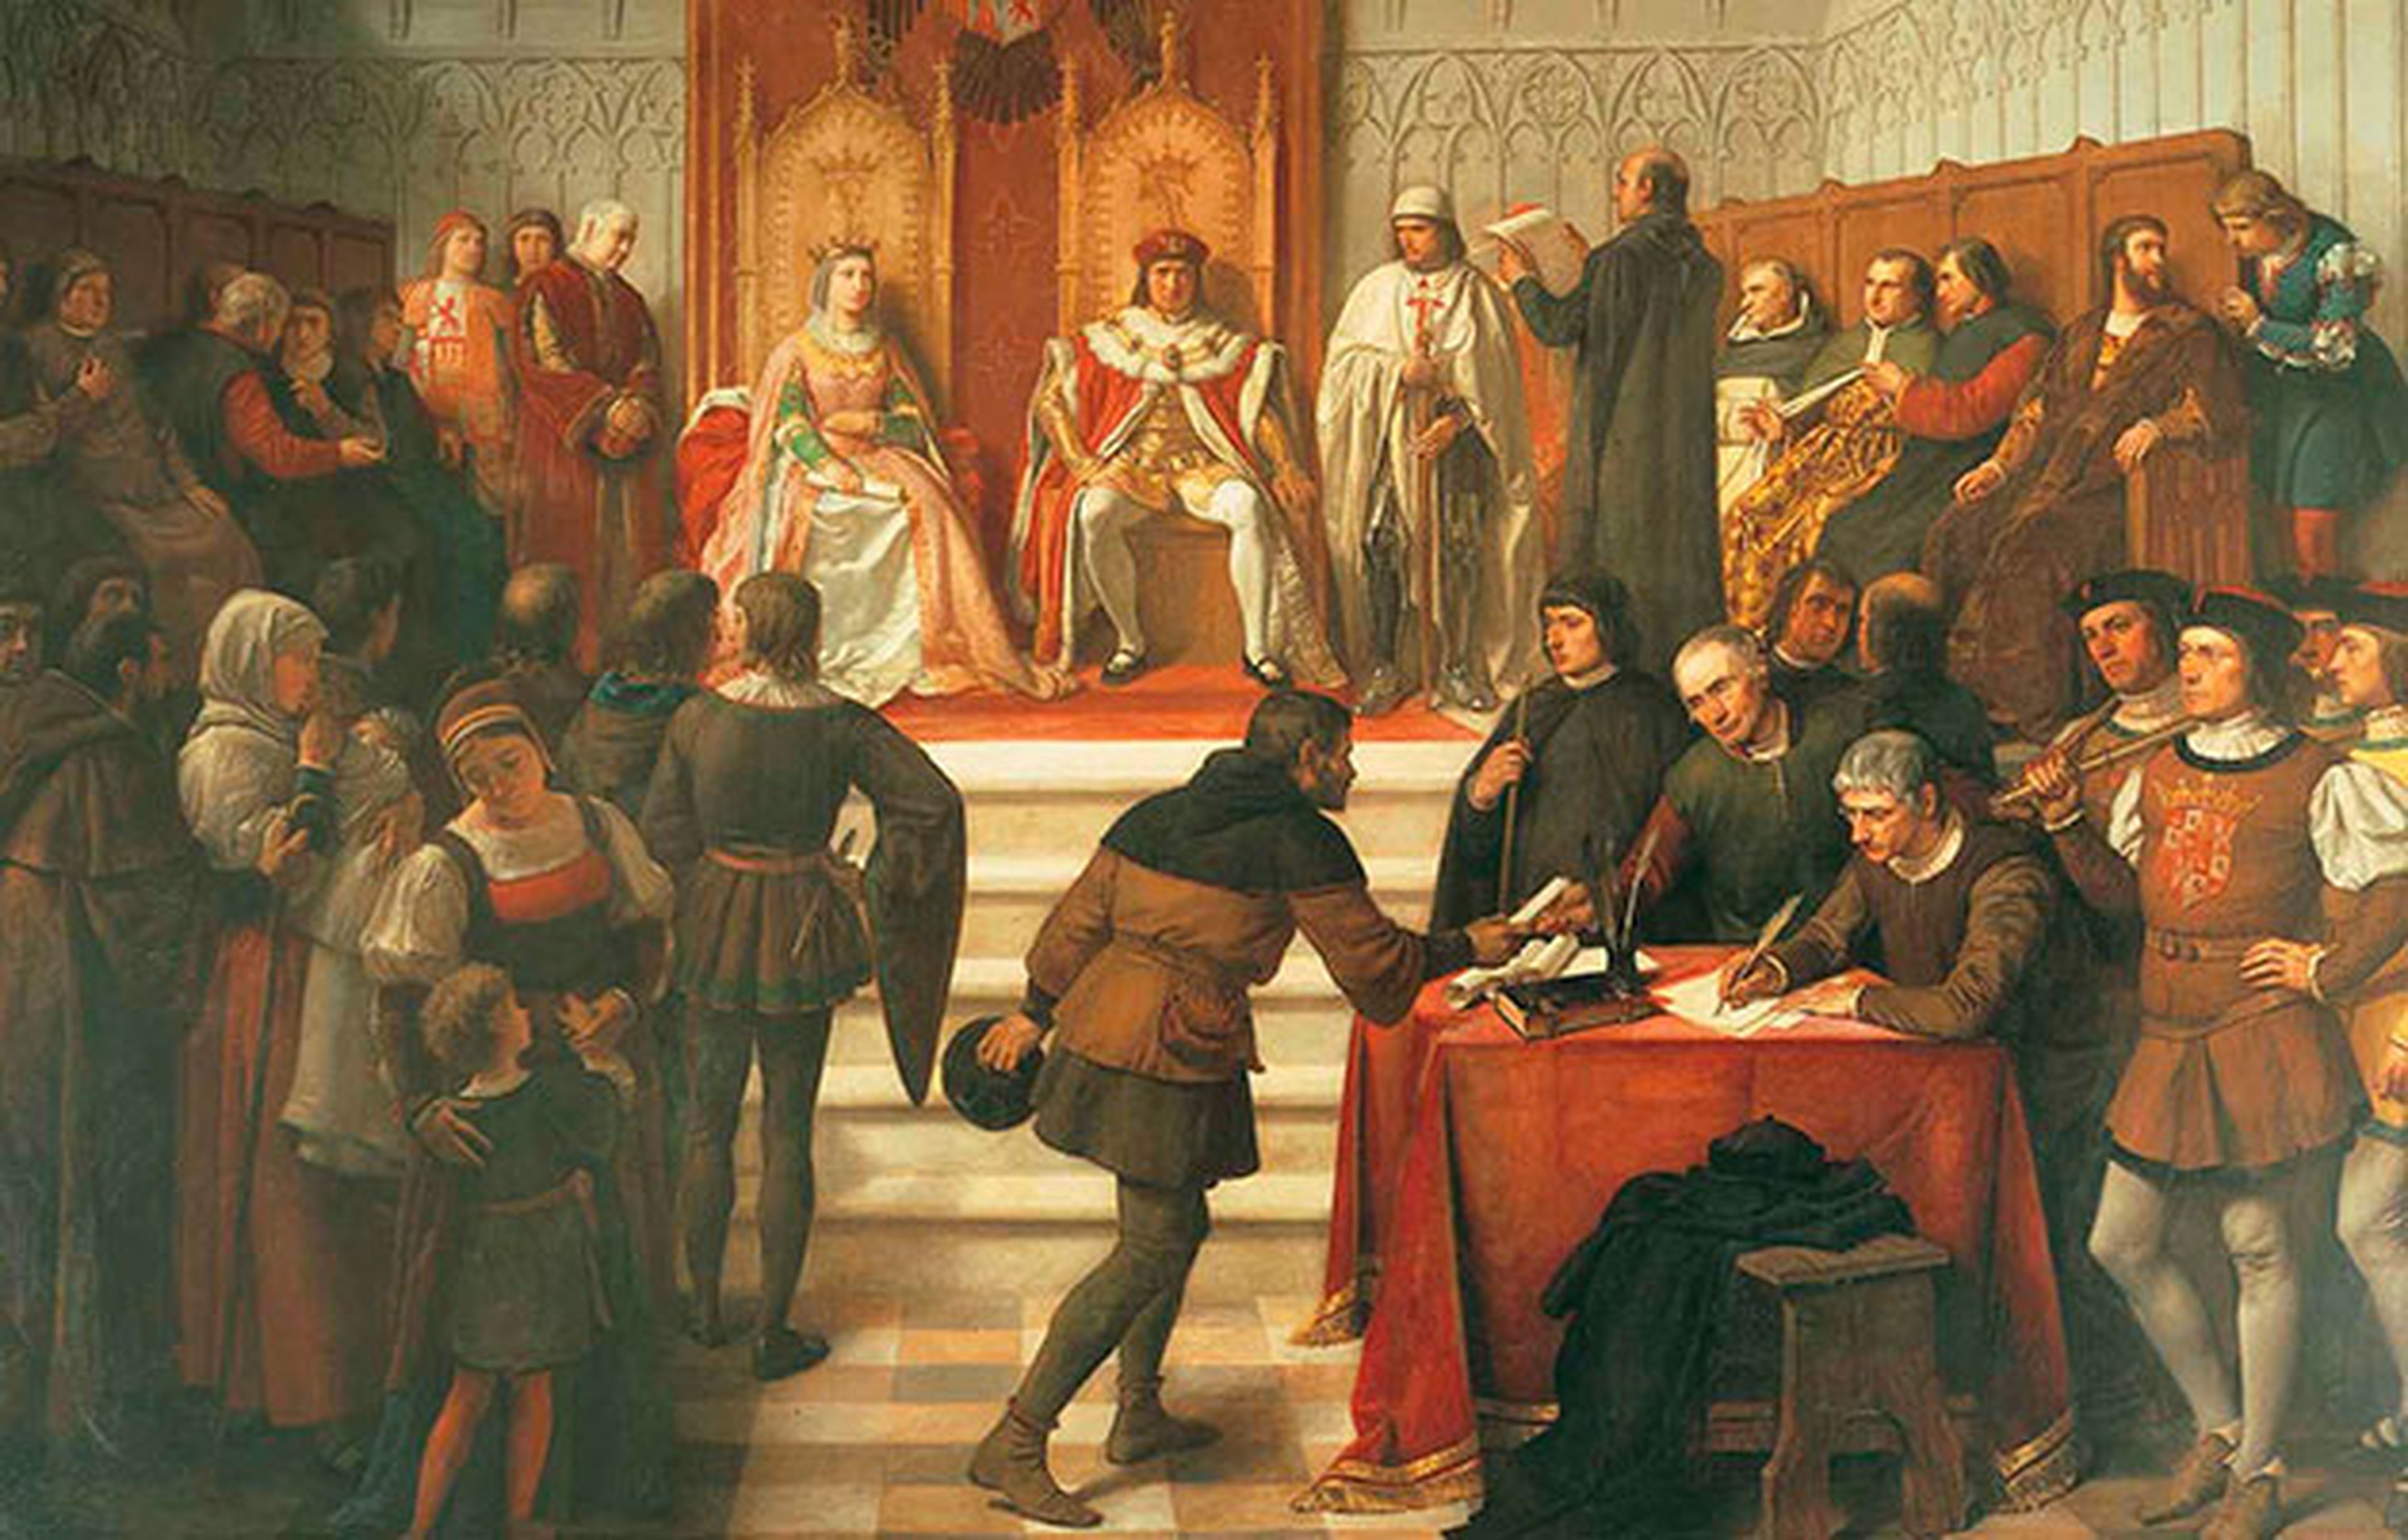 Los Reyes Católicos en el acto de administrar justicia, de Víctor Manzano y Mejorada (1831-1865). Palacio Real de Madrid.